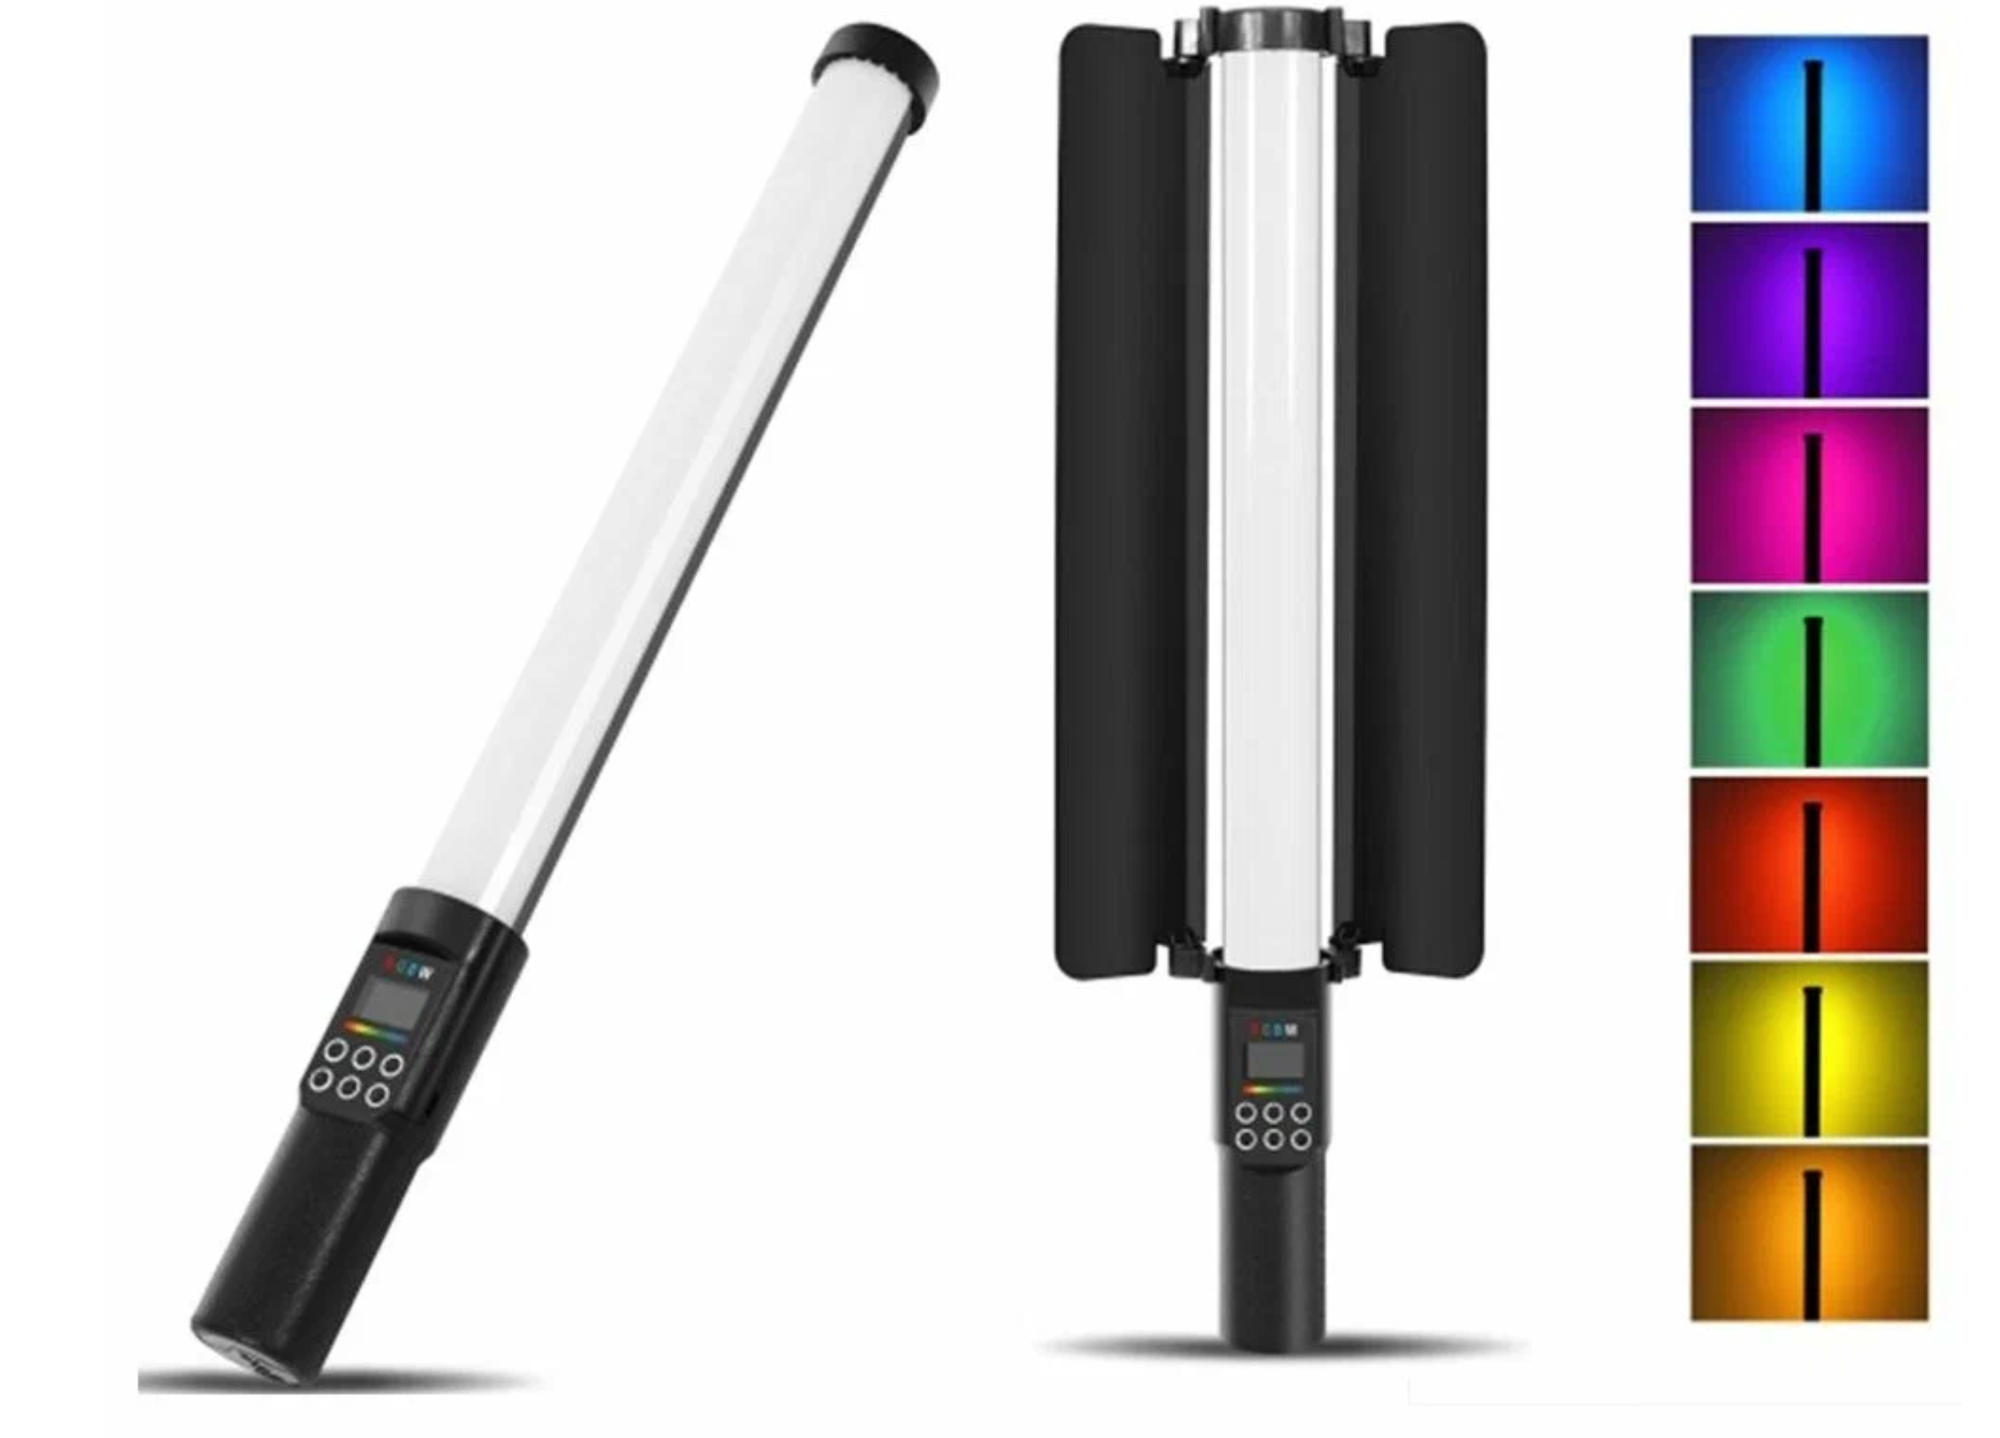 Светодиодная лампа палка разноцветная RGBW light stick YB130 на аккумуляторе с световым барьером